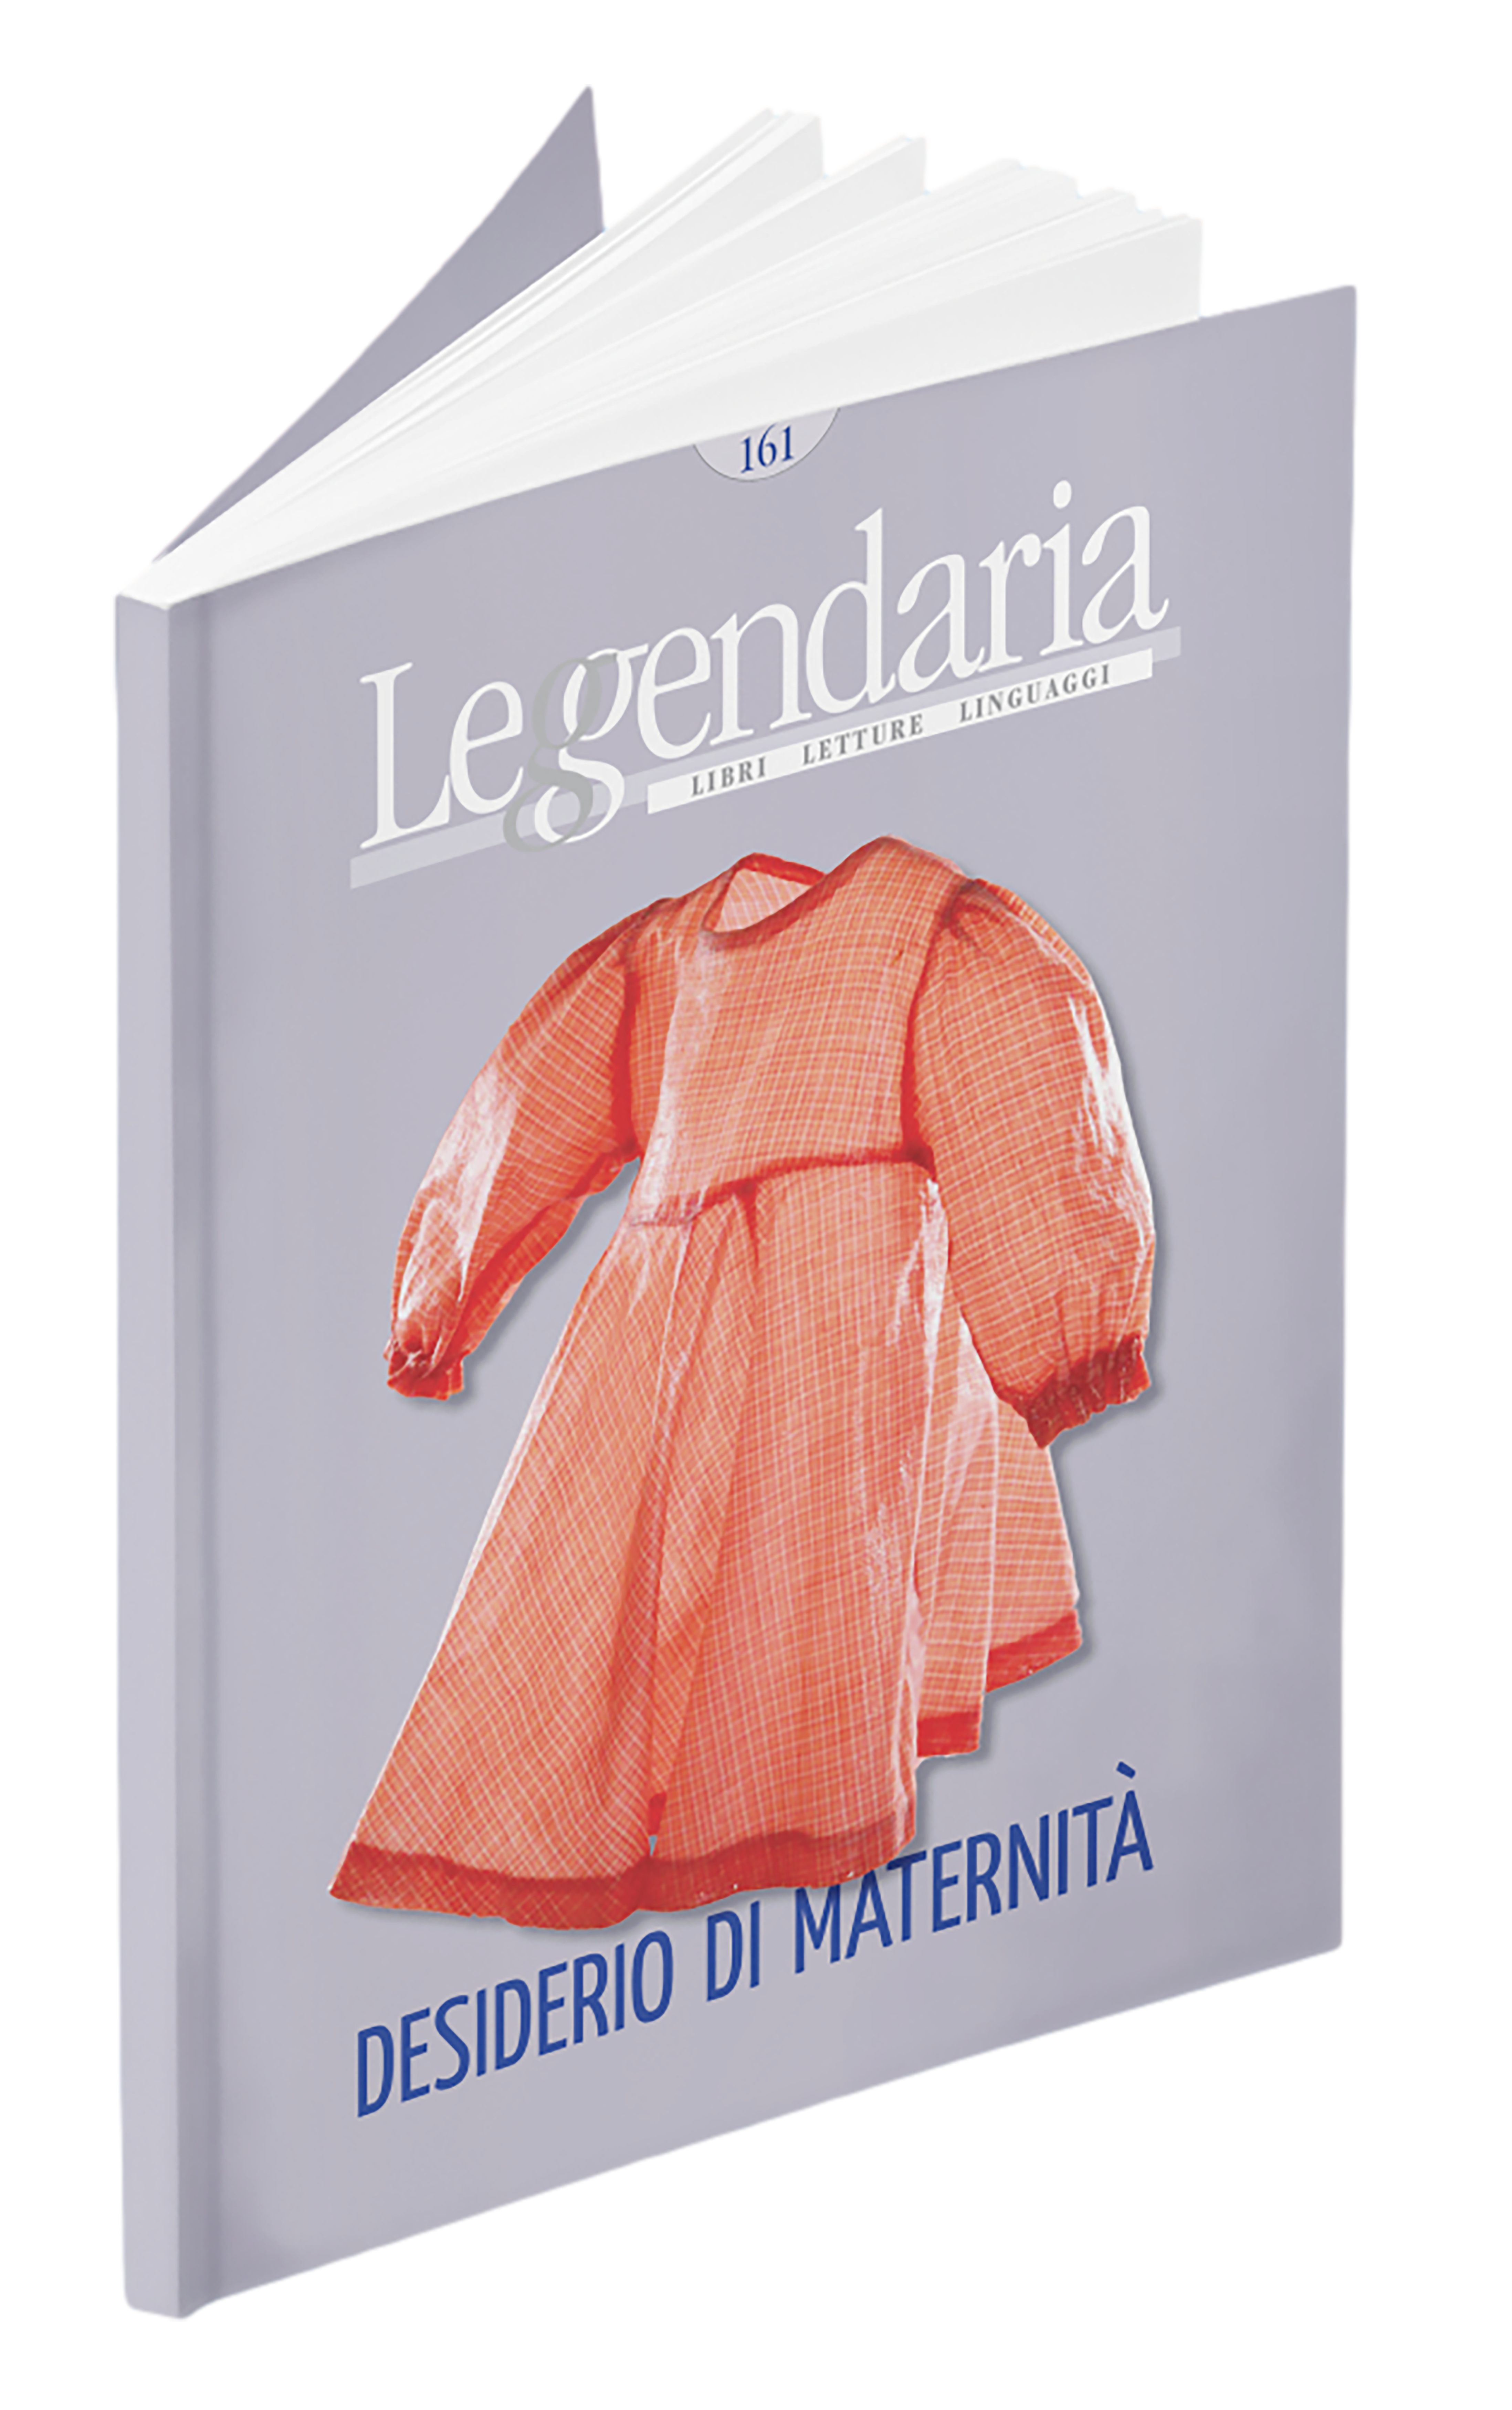 Leggendaria 161 - Desiderio di maternità